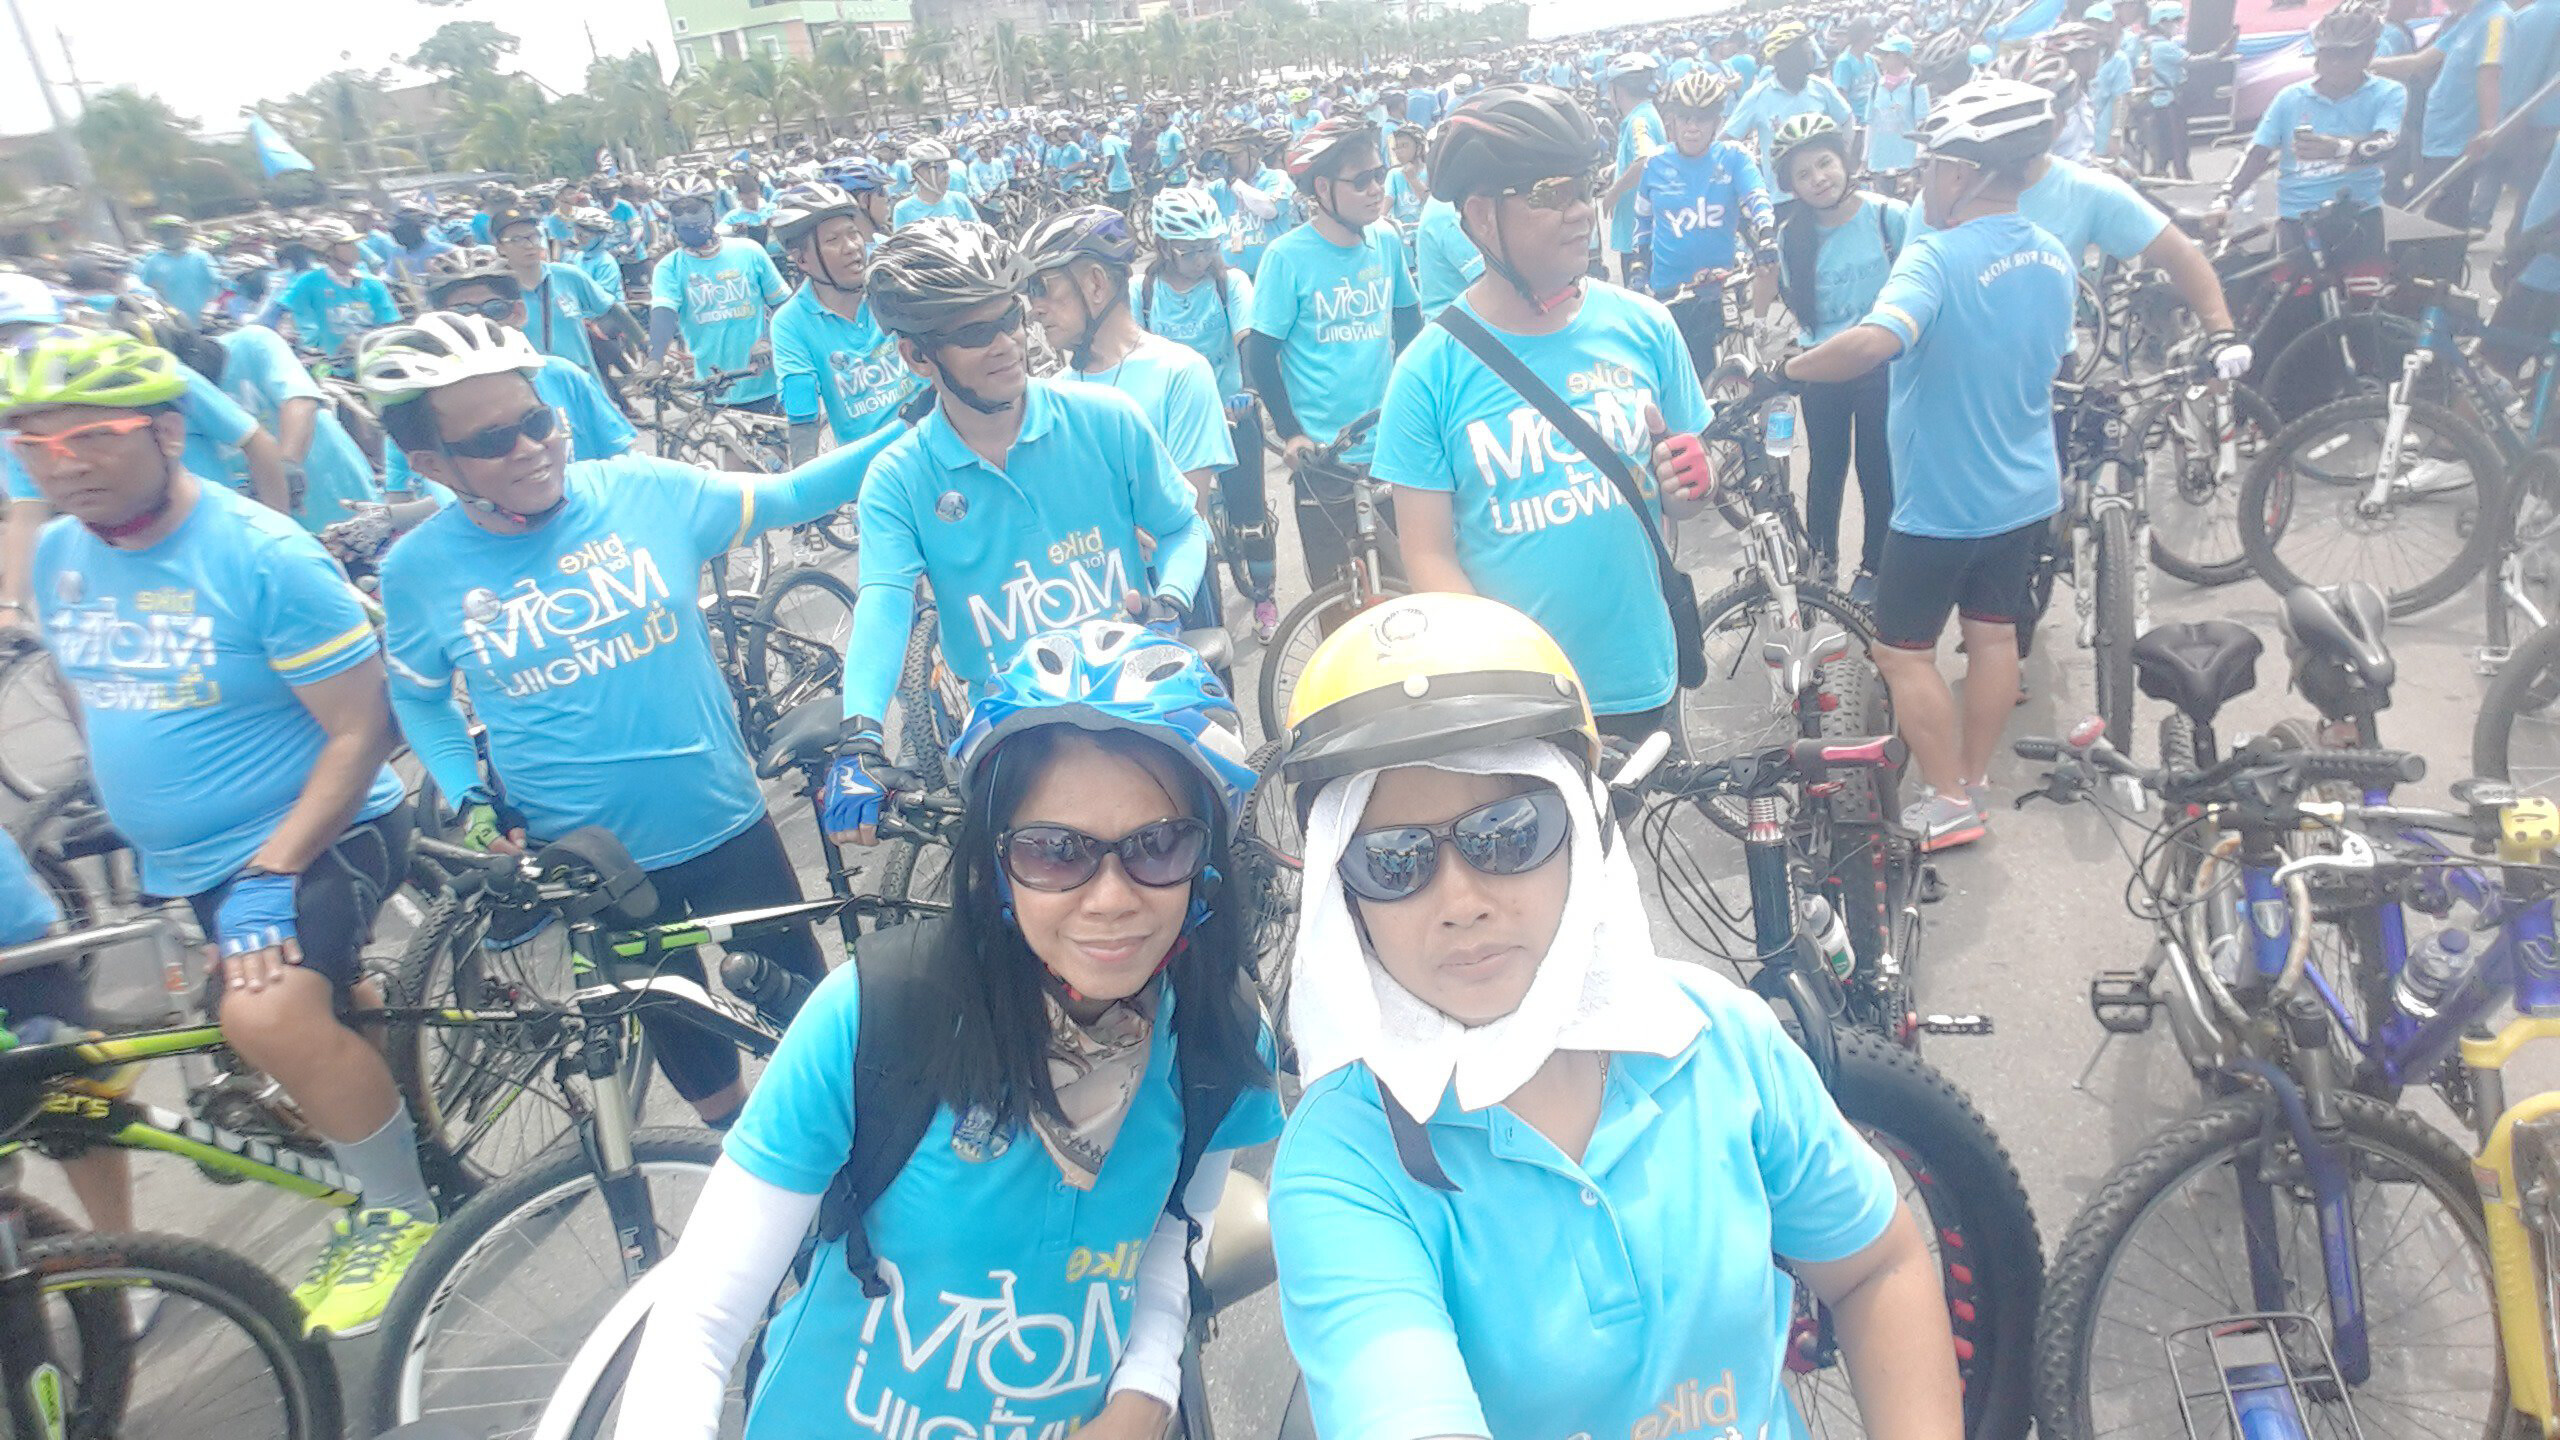 หอสมุดแห่งชาติชลบุรี ขอเชิญร่วมกิจกรรม   Bike For Mom ปั่นเพื่อแม่  ในวันอาทิตย์ที่ 16 สิงหาคม 2558